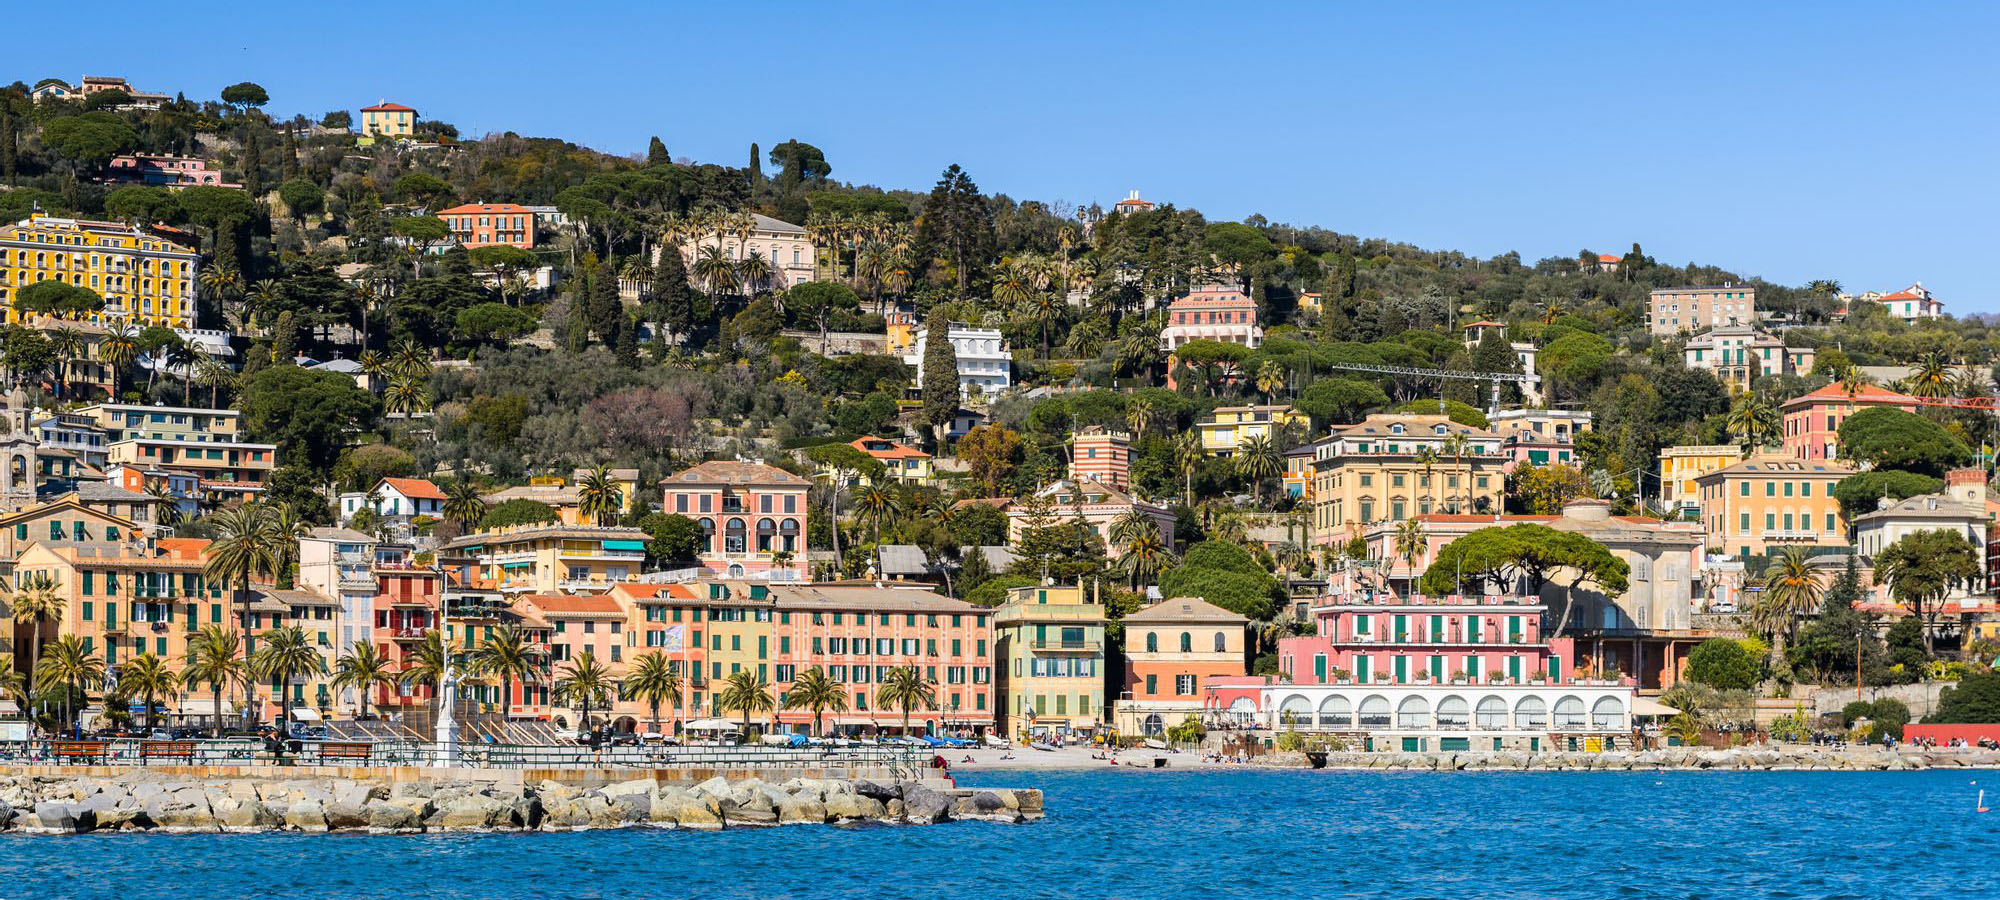 Ottica Prisma - Negozio lenti e montature occhiali Santa Margherita Ligure